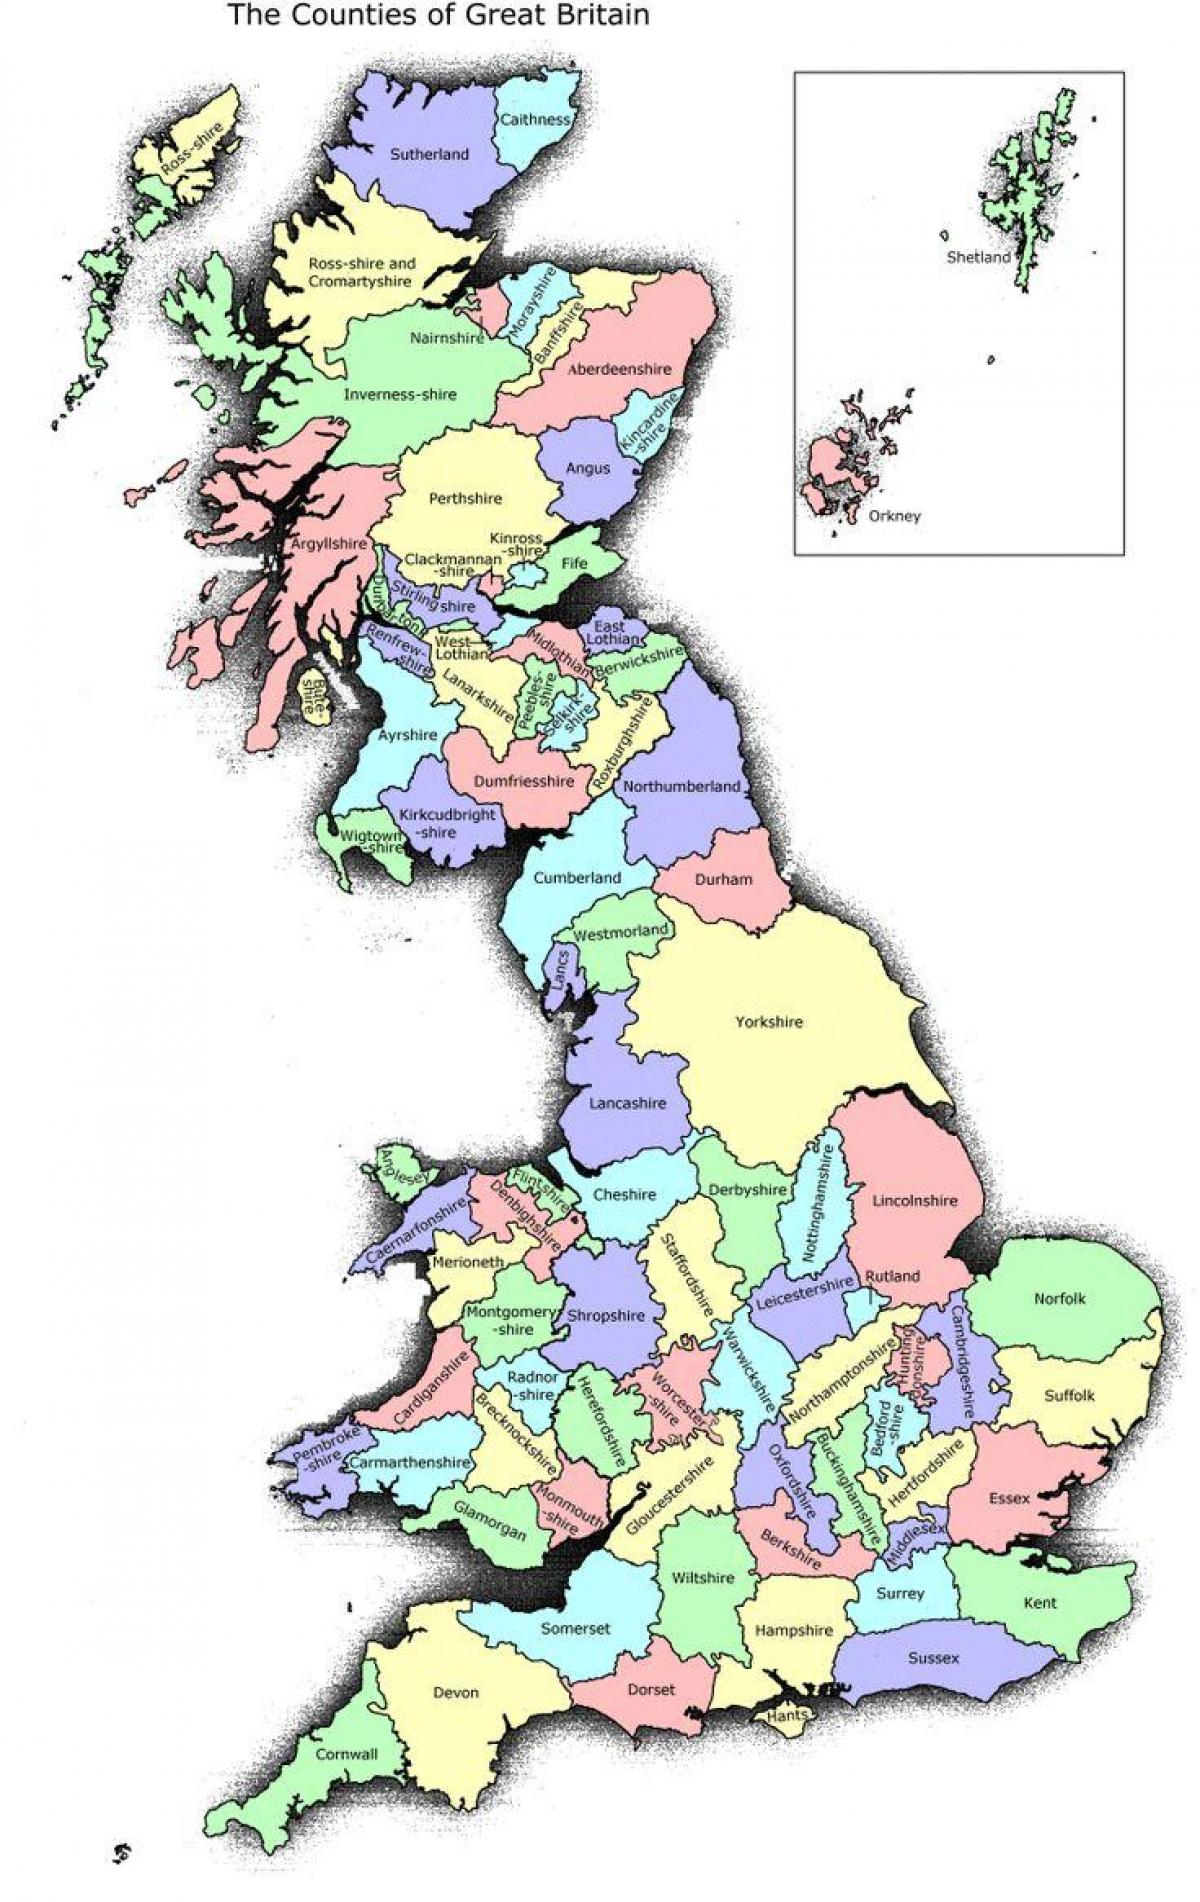 UK Great Britain map